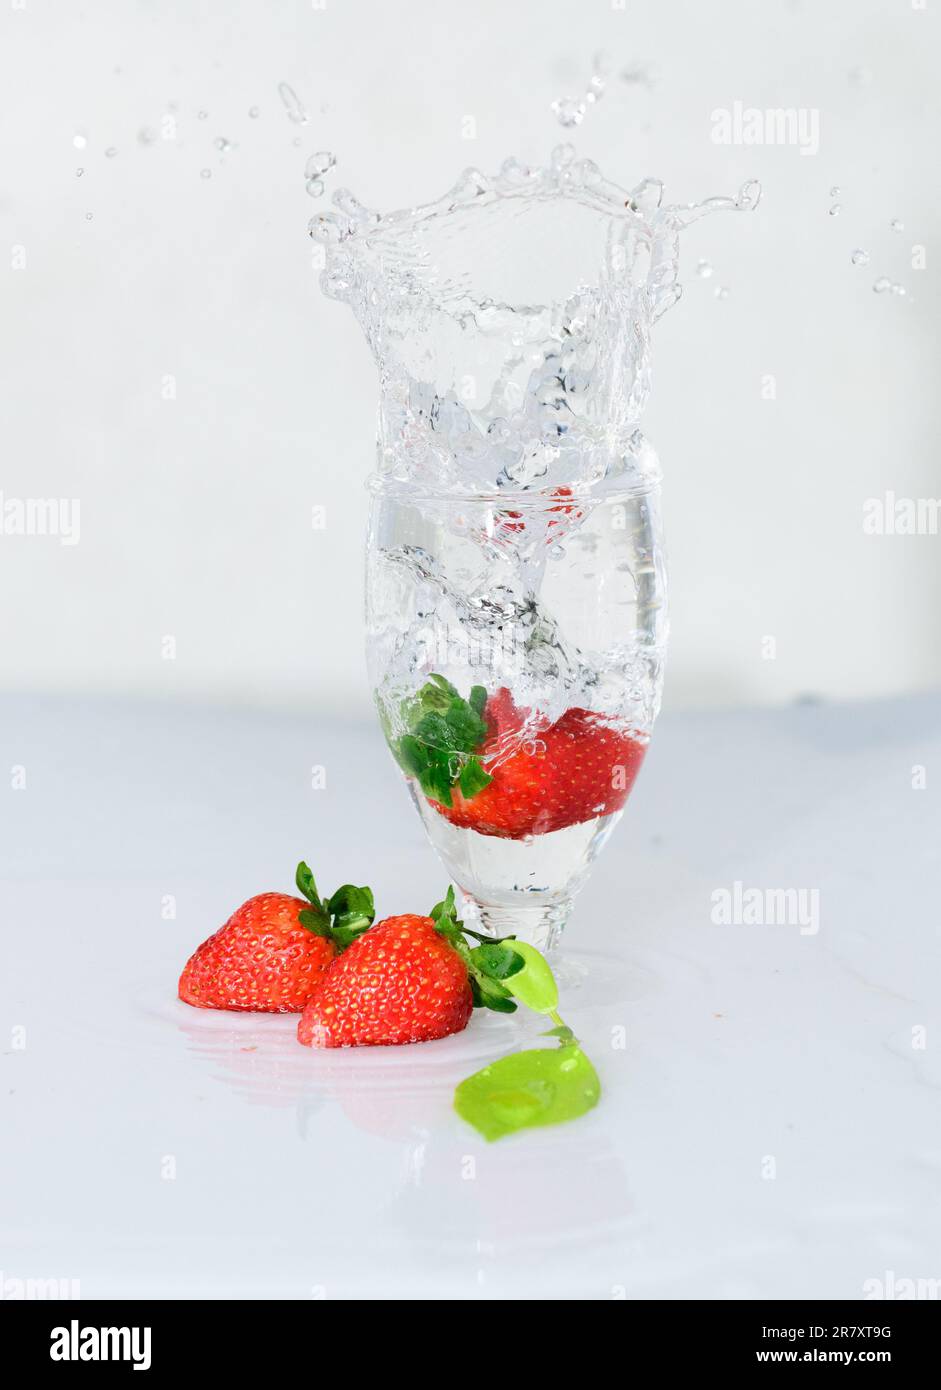 La fragola cade su un bicchiere di vino, si congela il movimento dell'acqua, fondo bianco. Foto Stock